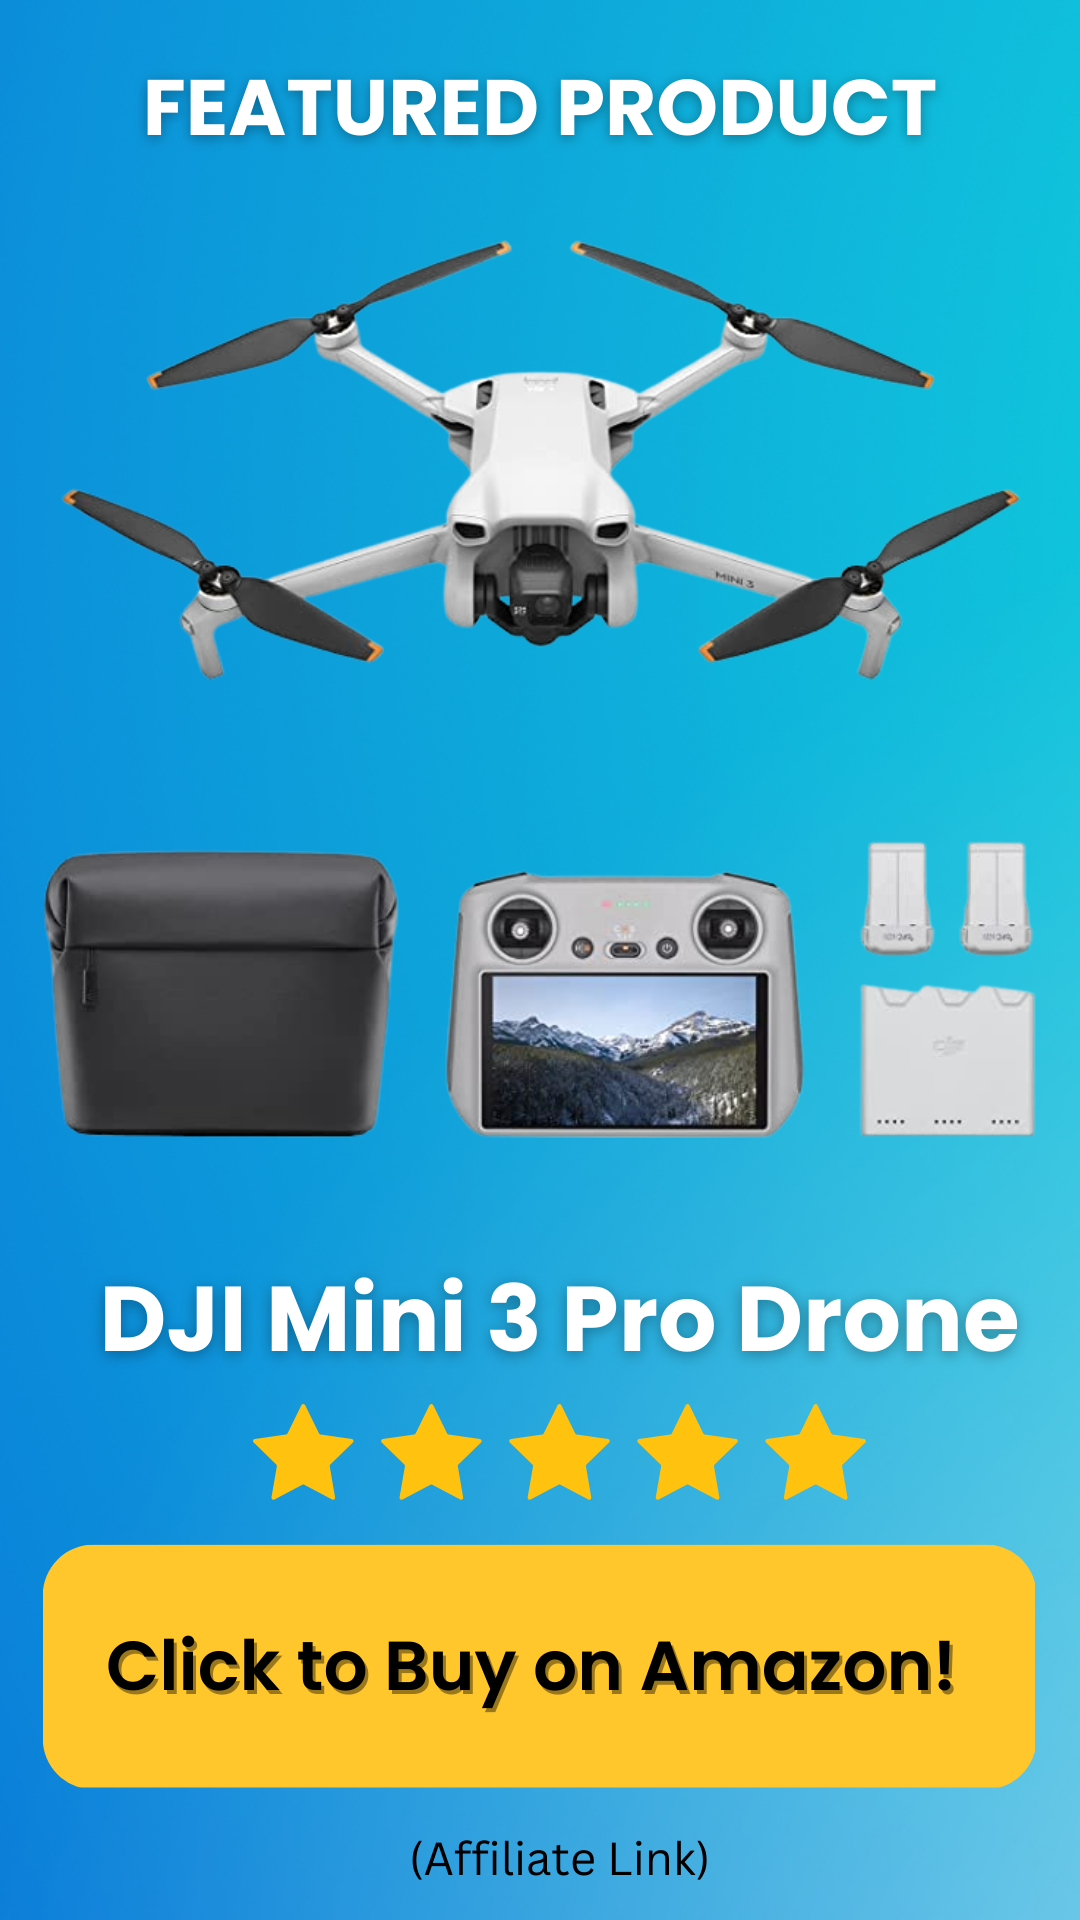 DJI Drone Ad.png